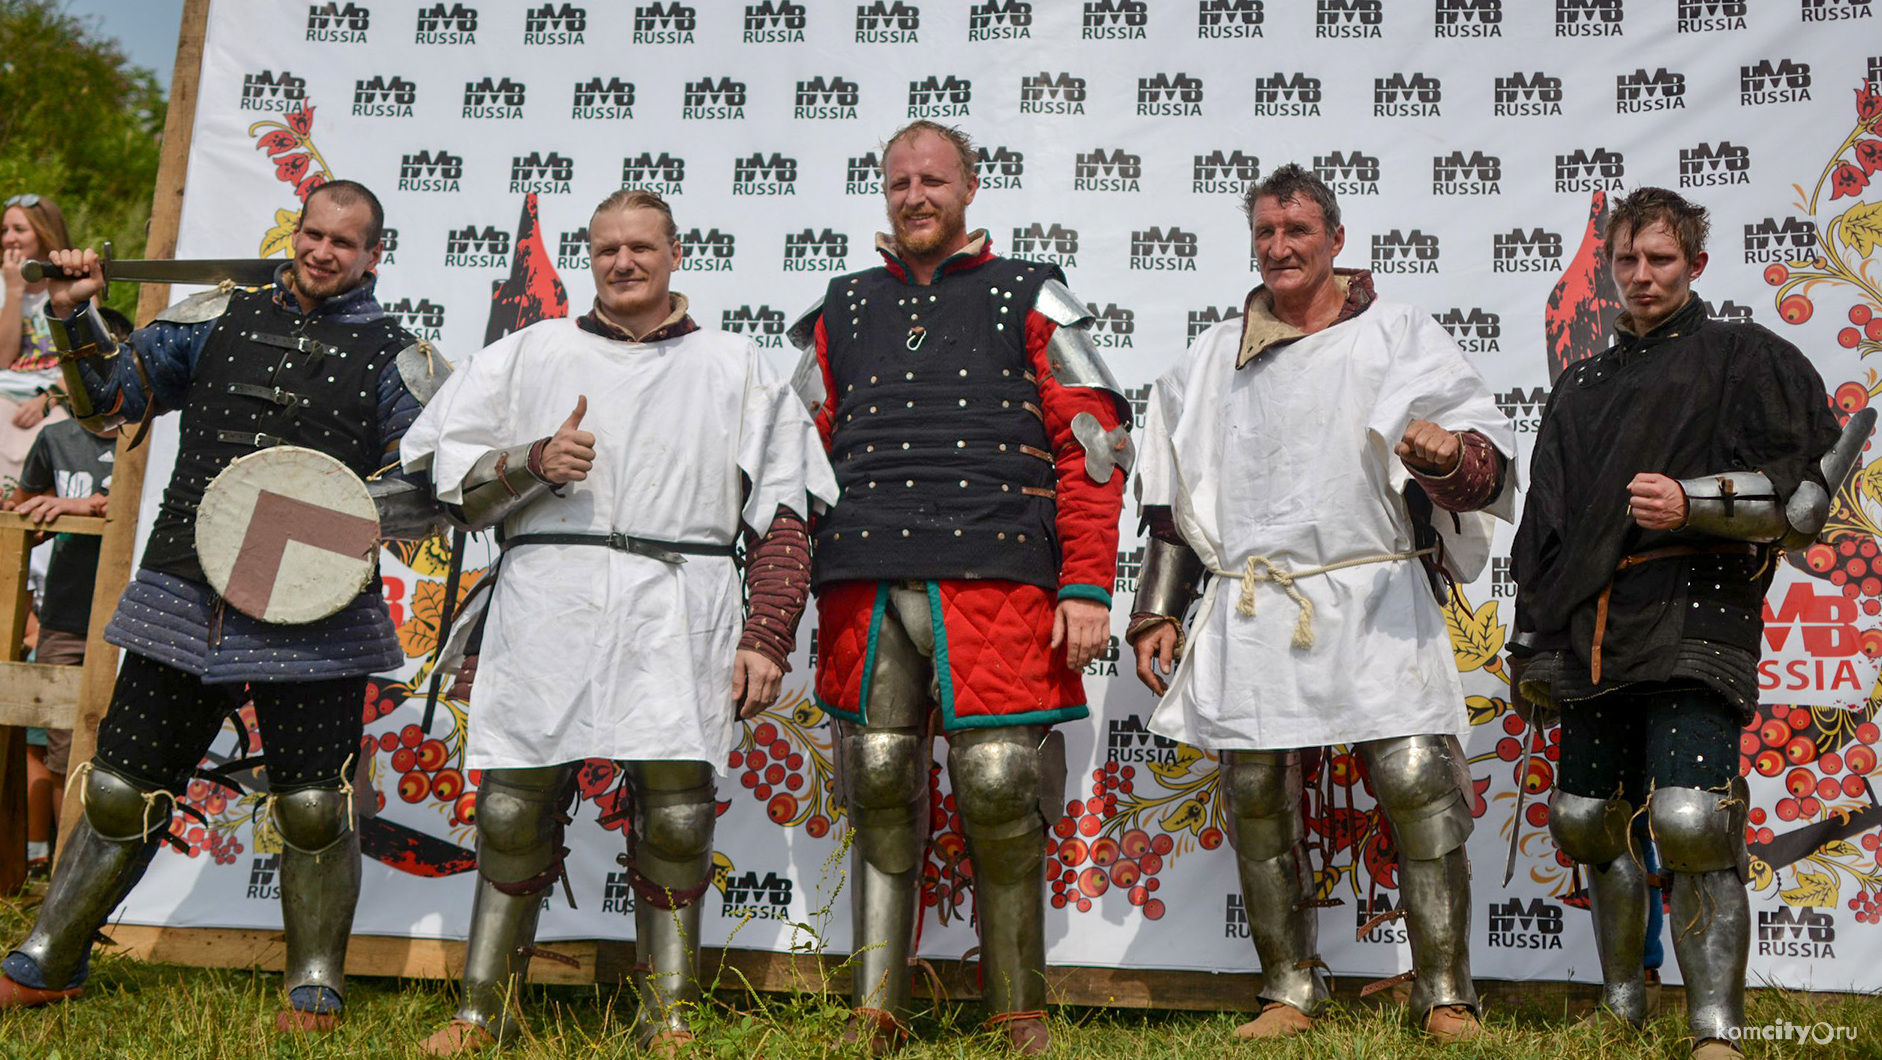 Реконструкторы из Комсомольска-на-Амуре, объединившись с сахалинцами, стали победителями рыцарского турнира на фестивале «Владивостокская крепость»